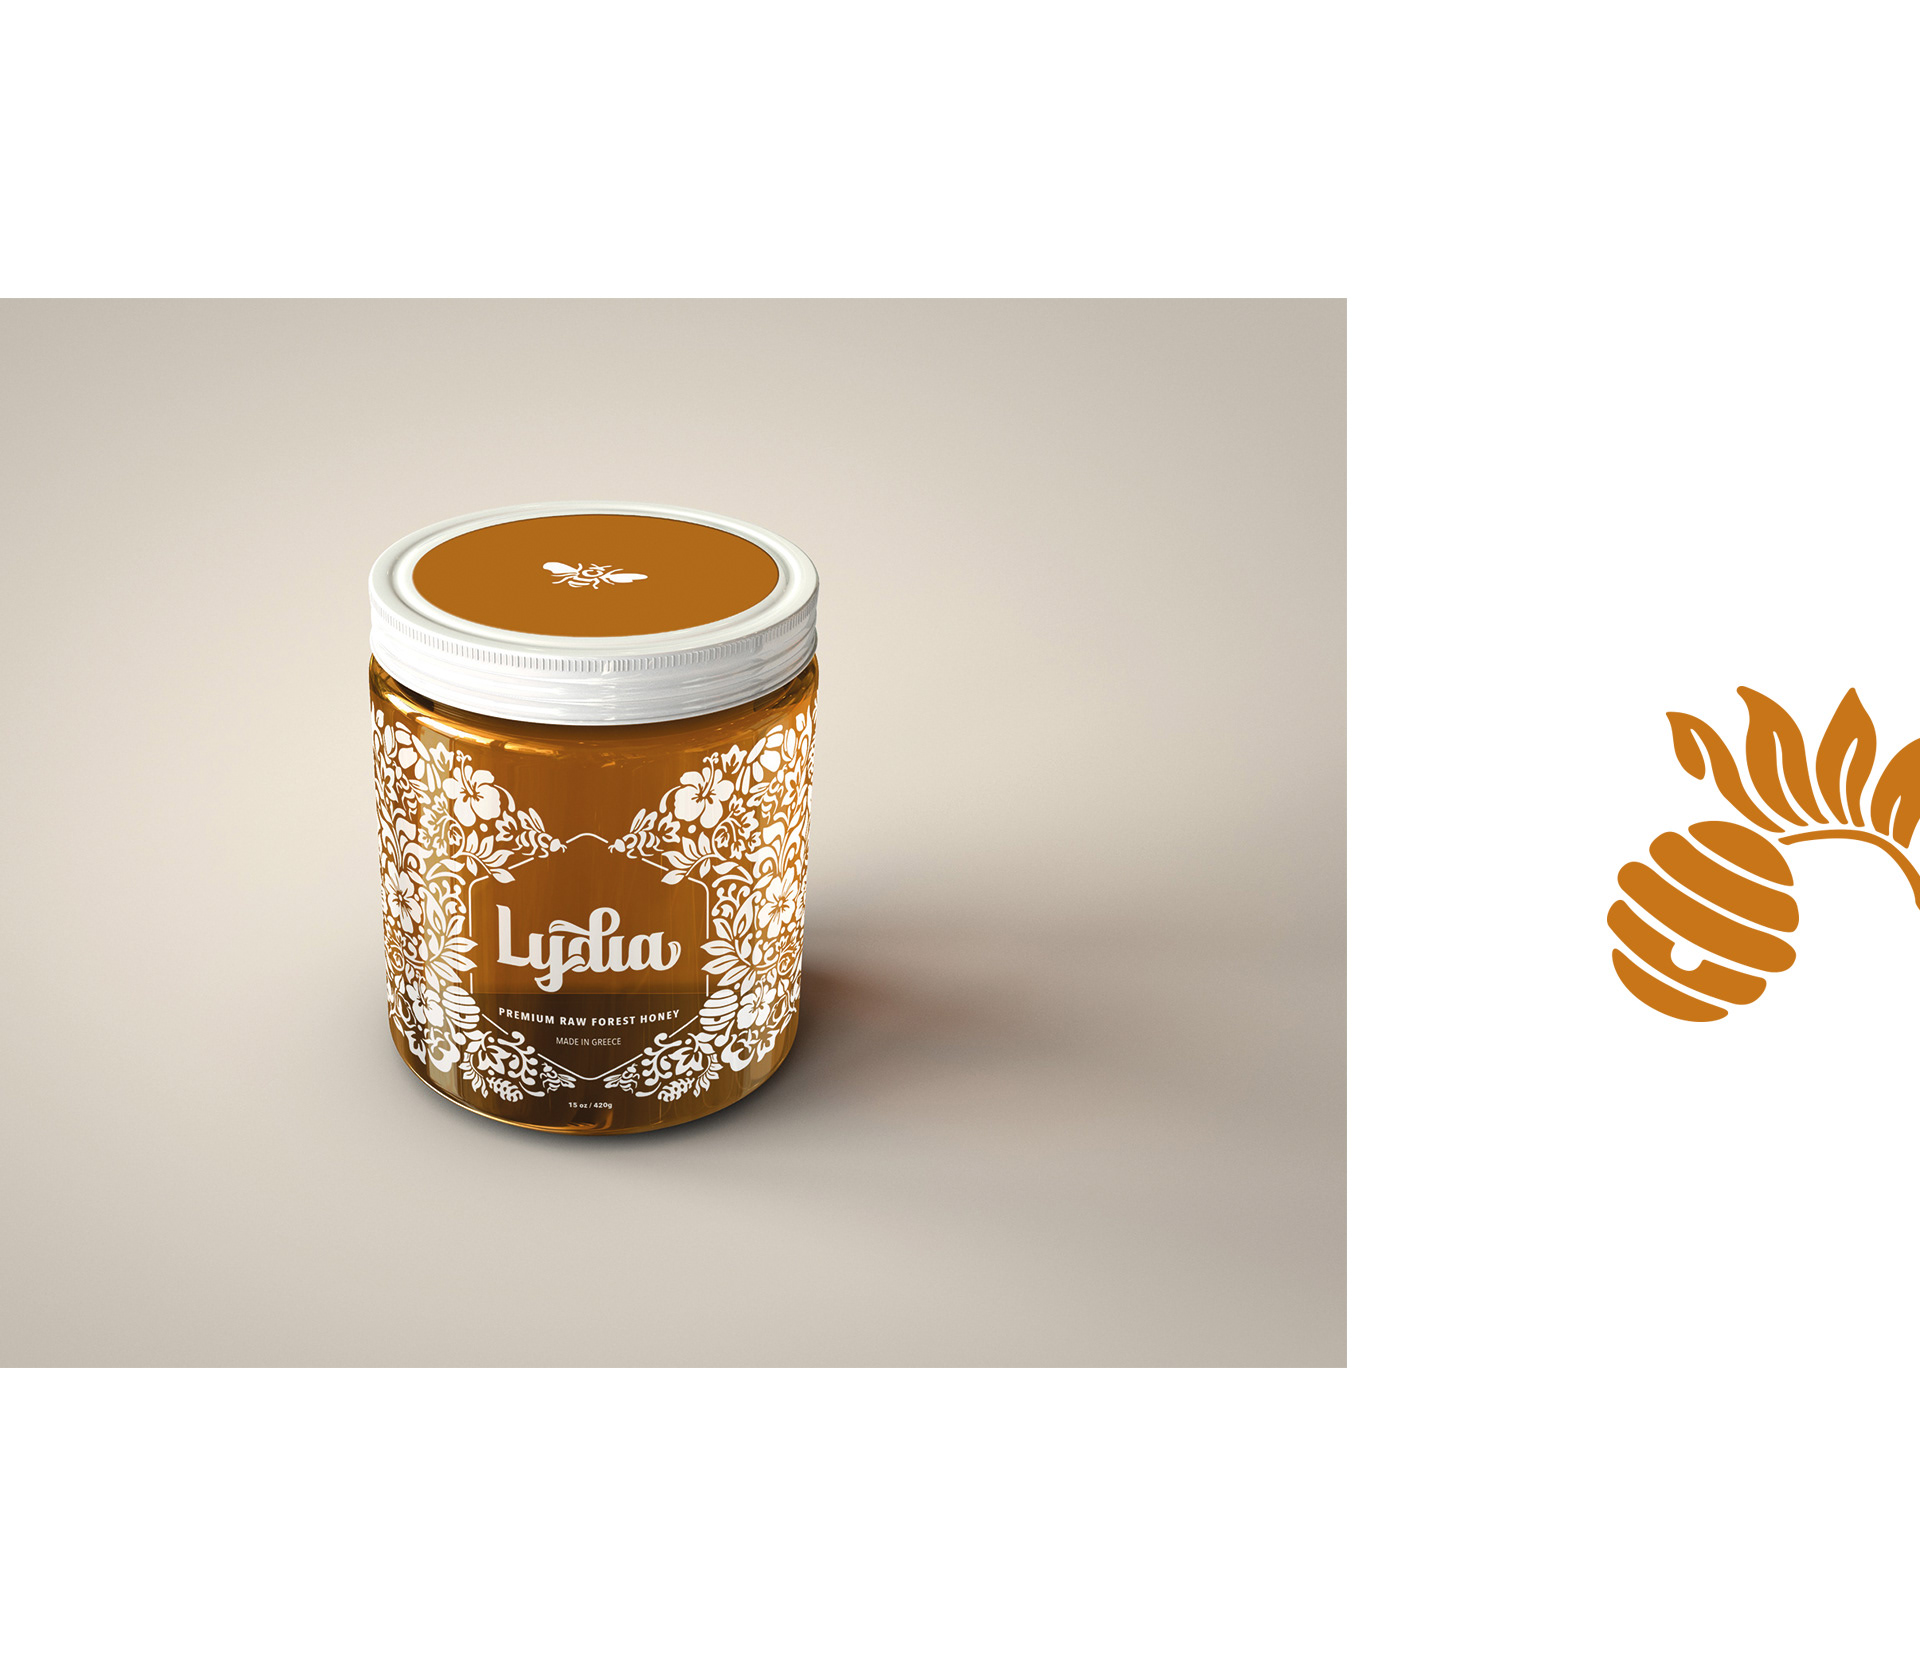 外国蜂蜜包装设计 蜂蜜包装设计哪家强 蜂蜜包装设计公司 第8张